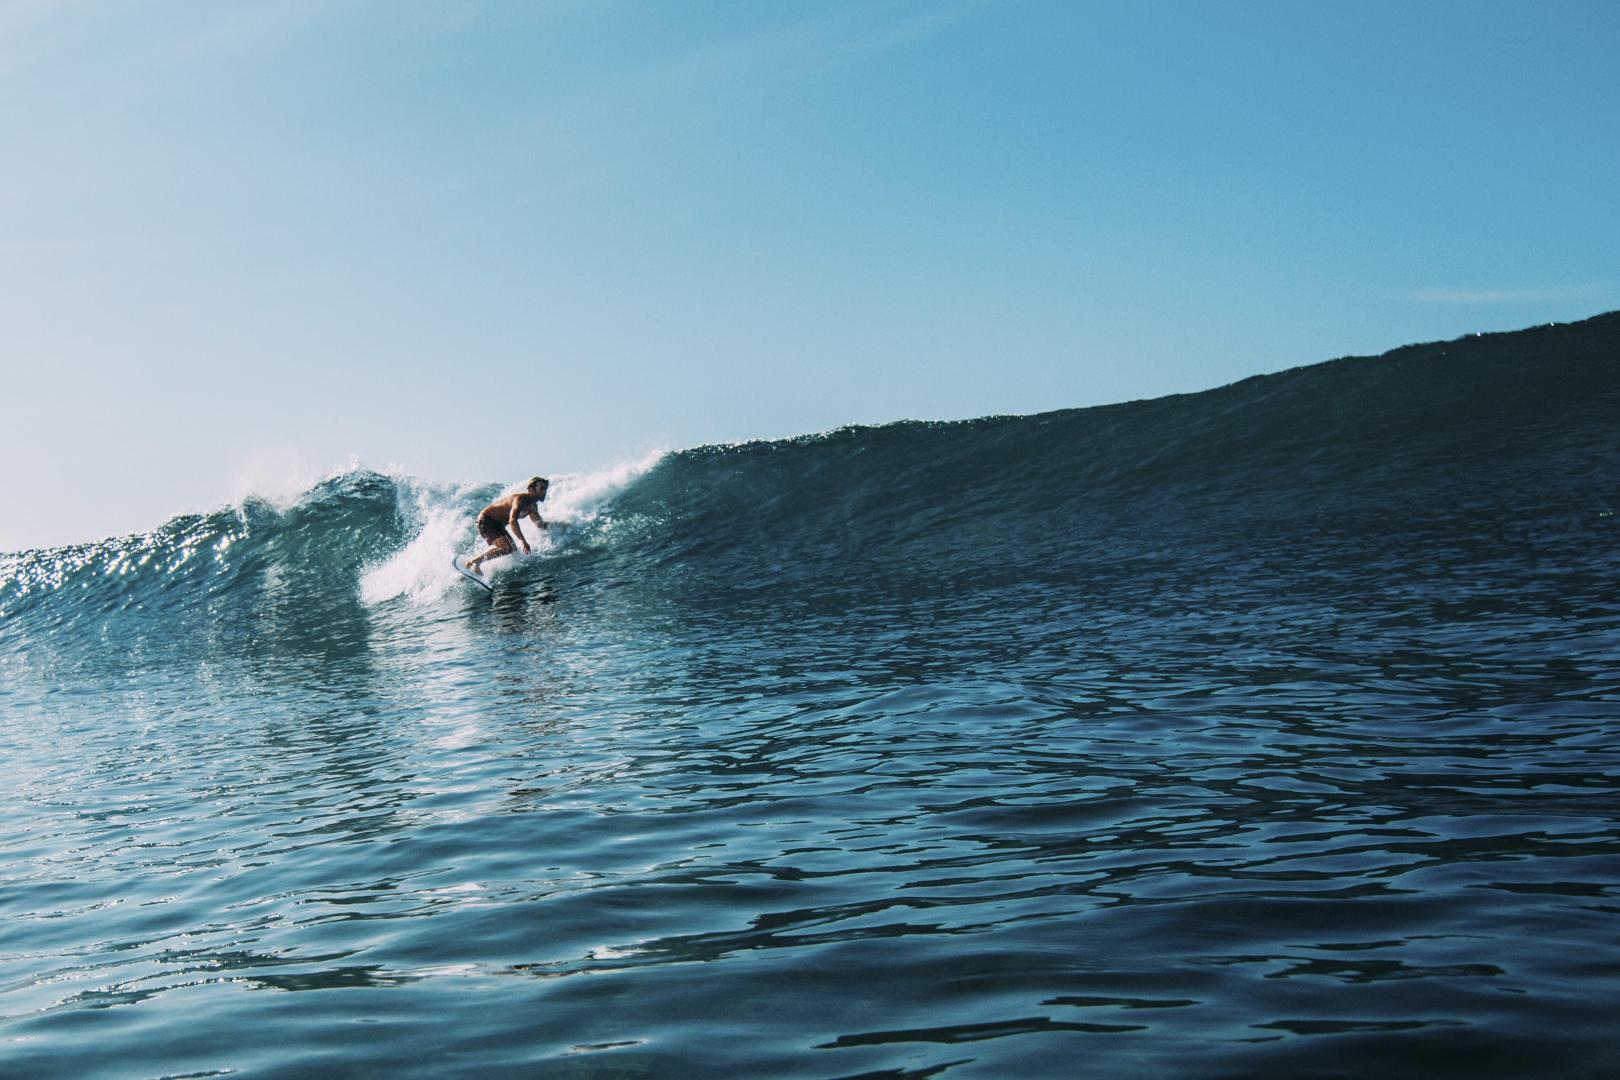 Intermediate surfer in Costa Rica on a wave-min